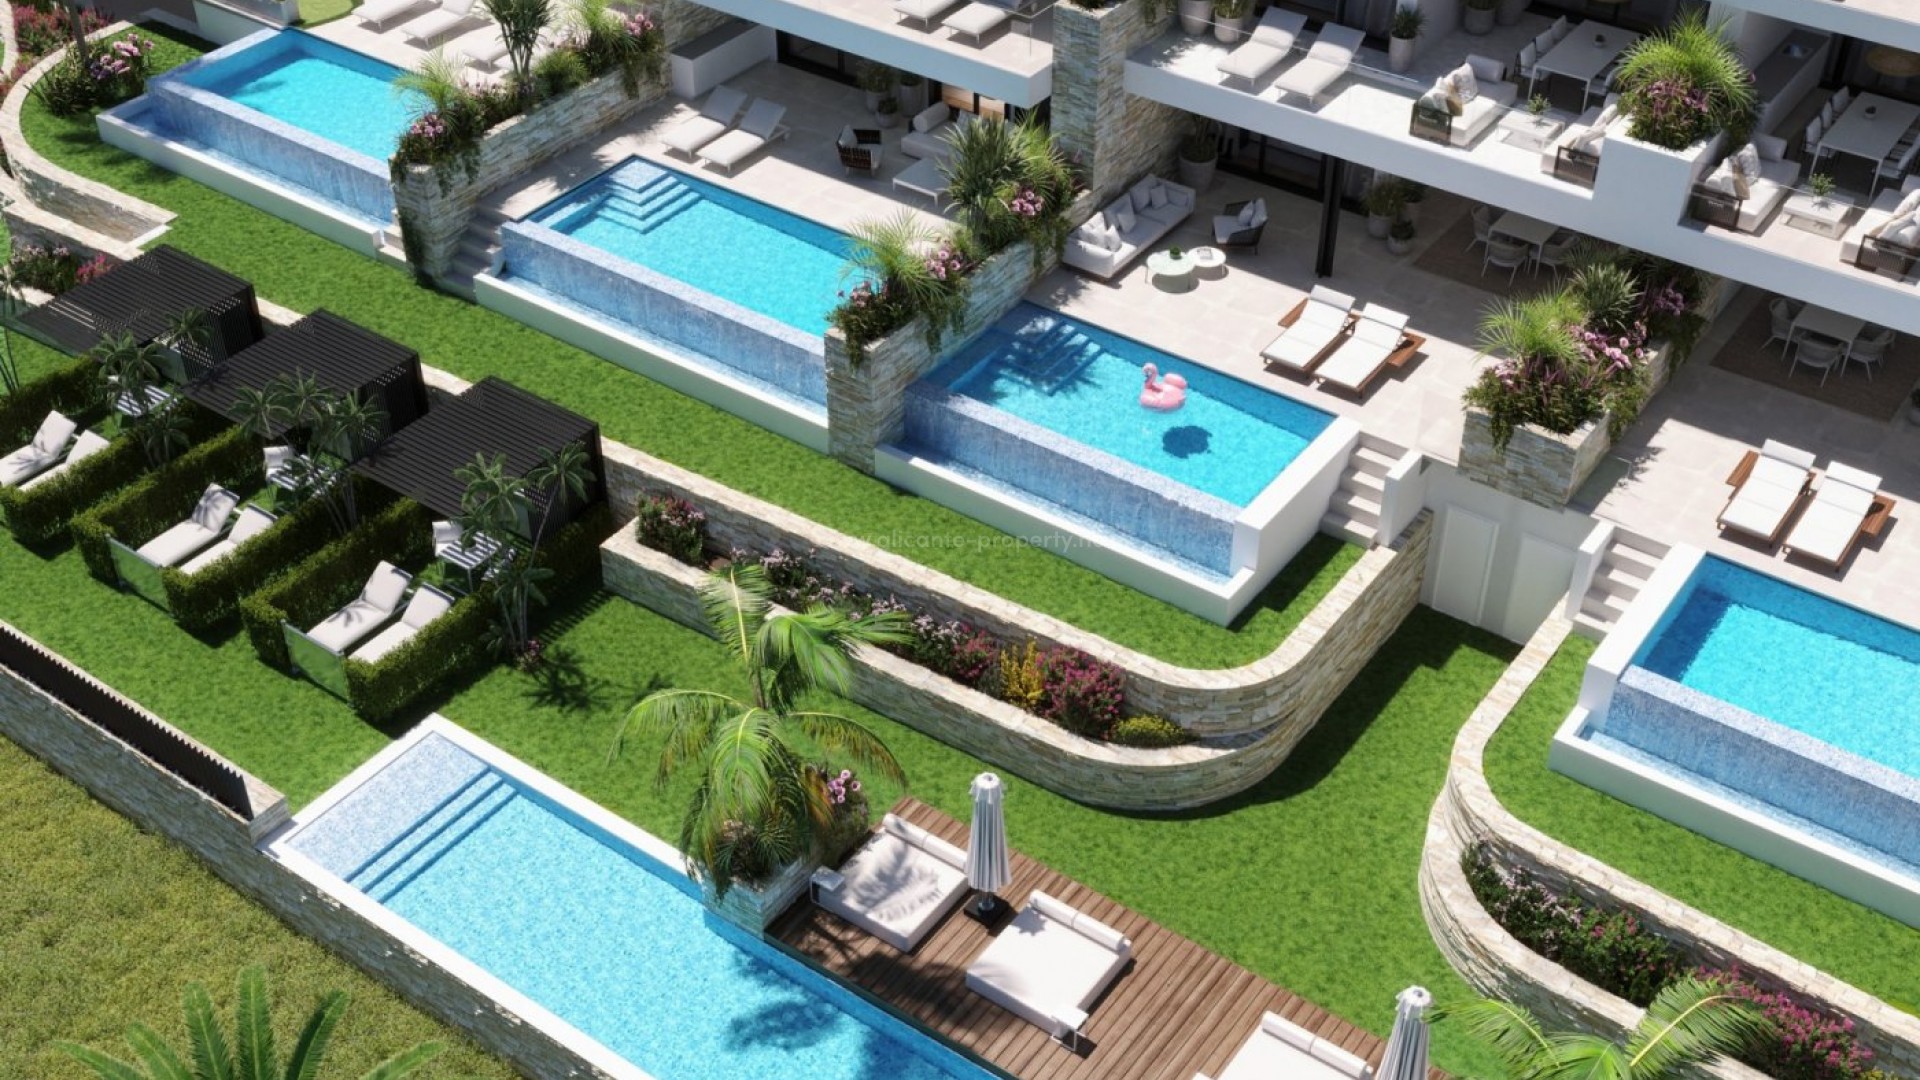 Helt nye luksusleiligheter i Las Colinas Golf, Country Club, 3 soverom, 2 bad, vinrom,leiligheter og toppleiligheter på bakkeplan har private svømmebasseng